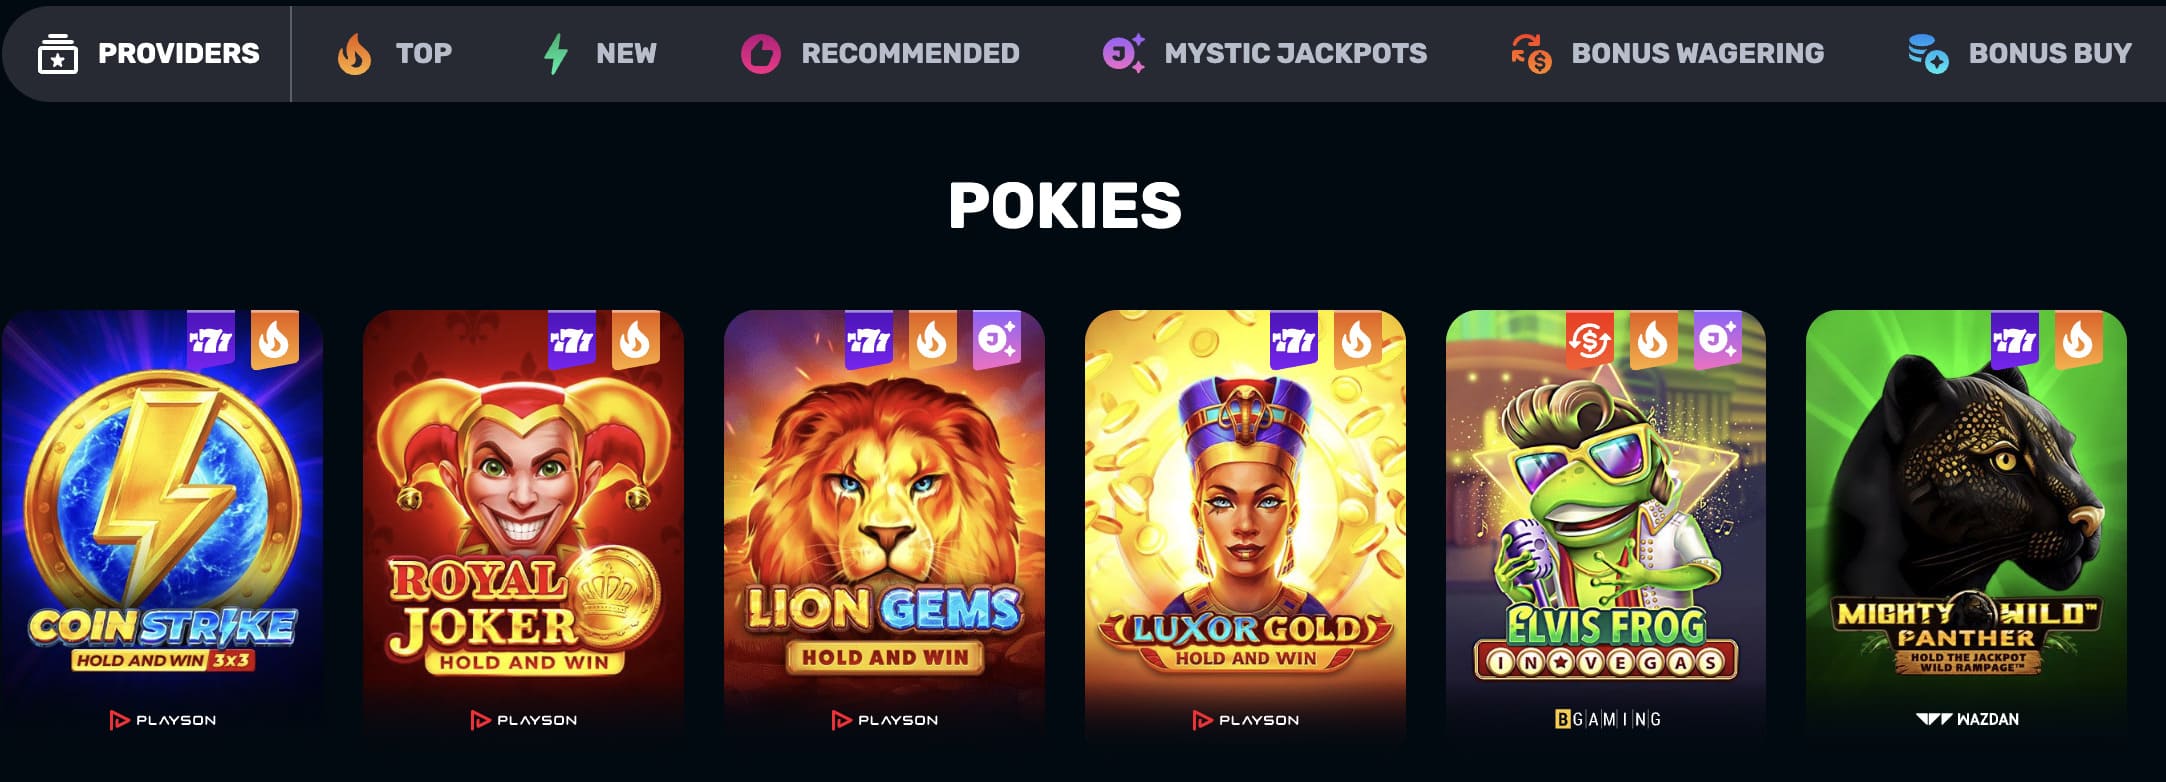 Online pokies at Rocket Play